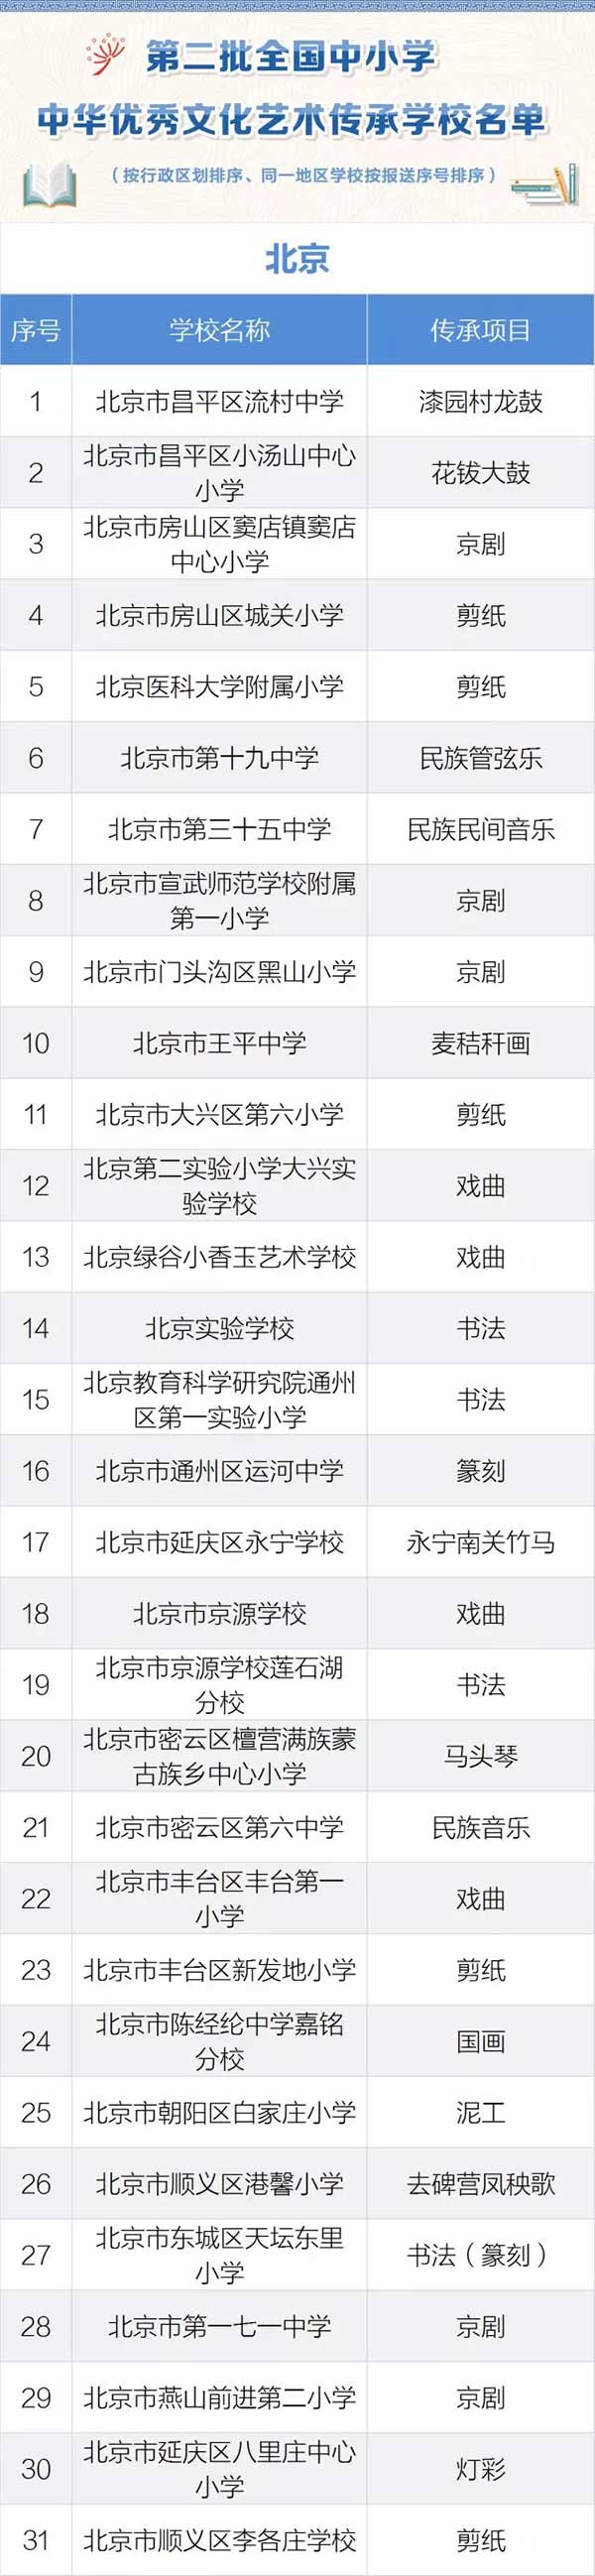 第二批中小学优秀文化艺术传承学校名单（北京）1